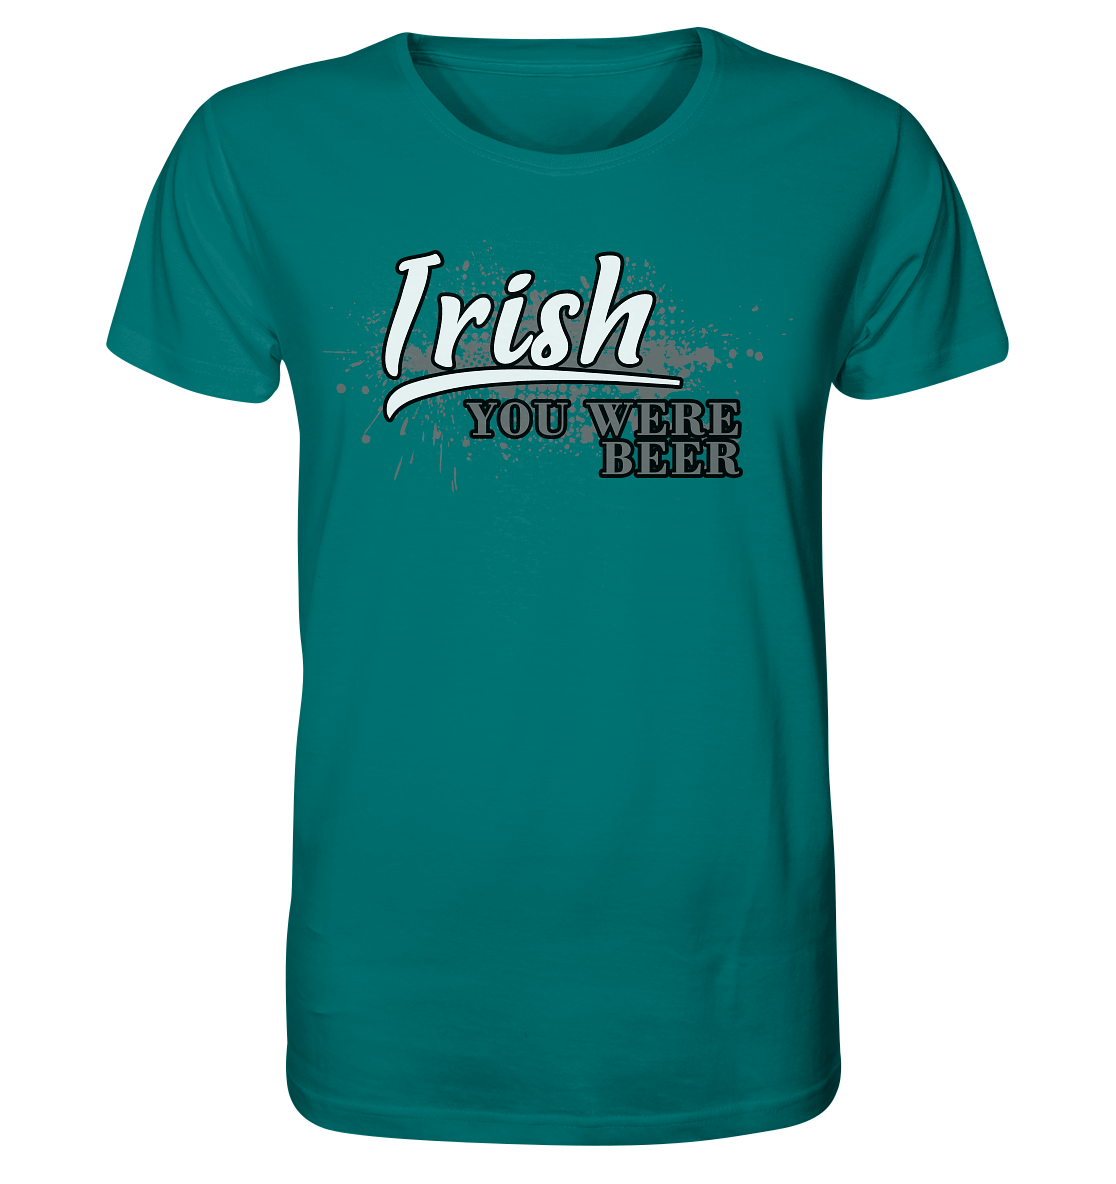 Irish "You Were Beer" - Organic Shirt